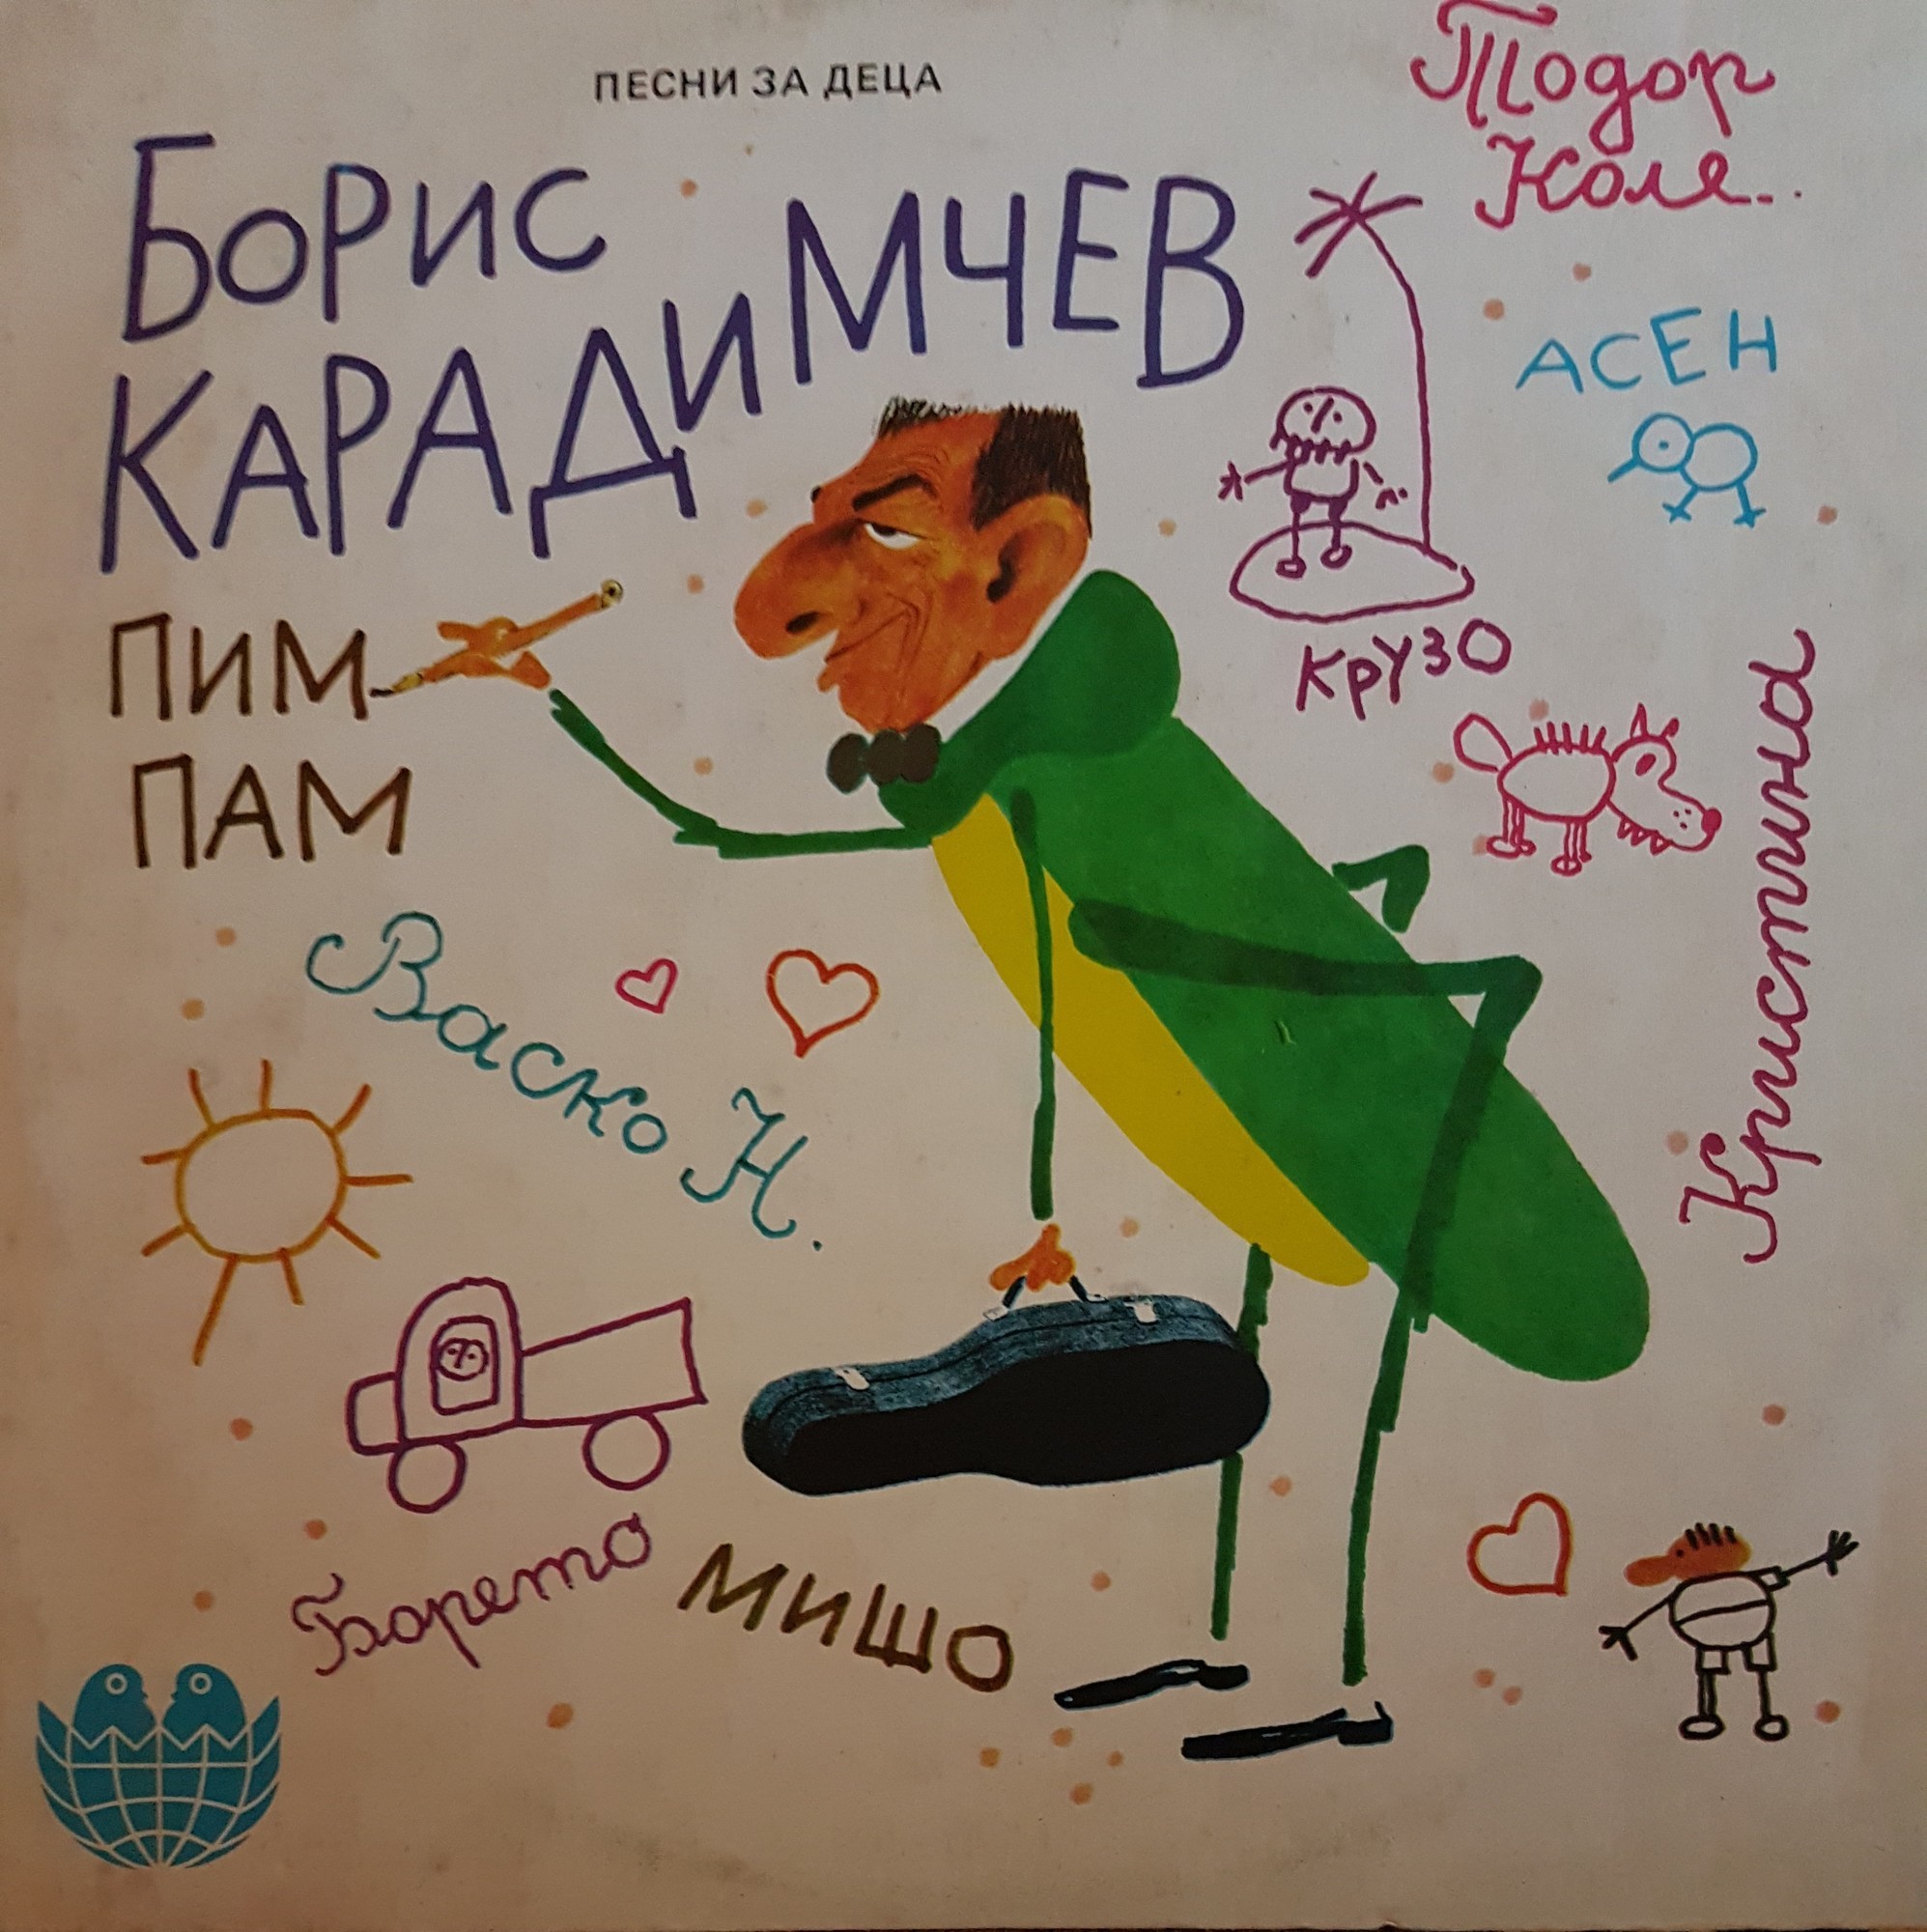 Борис Карадимчев. Песни за деца